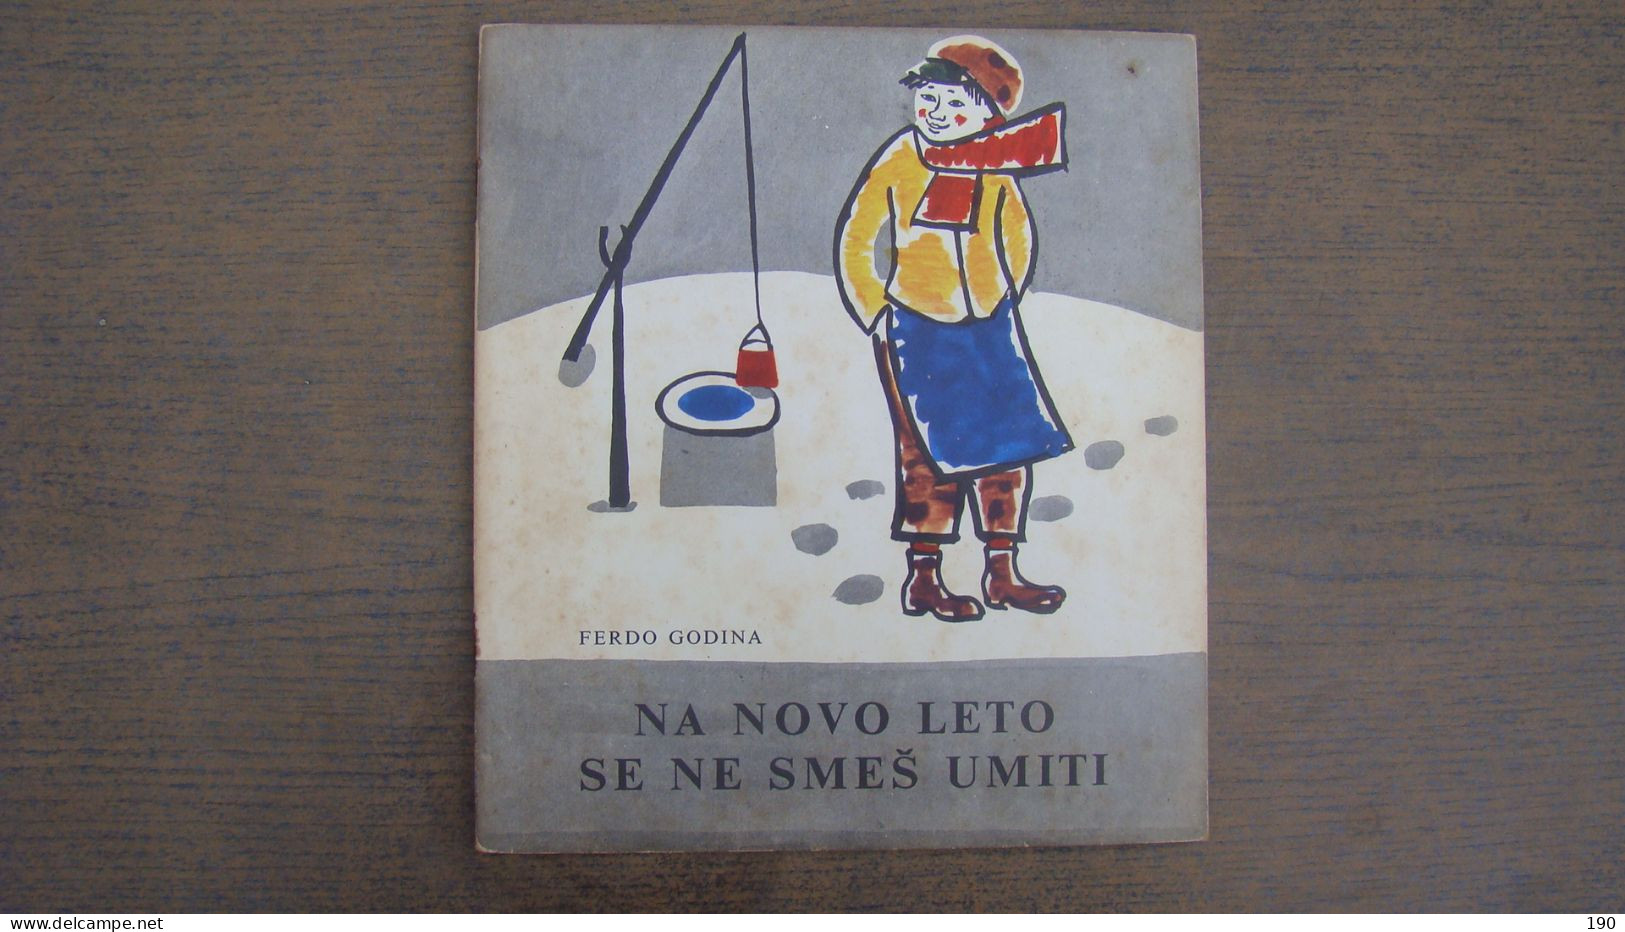 Na Novo Leto Se Ne Smes Umiti (Ferdo Godina),Illustrated:Zdenka Golob-Borcic - Idiomas Eslavos